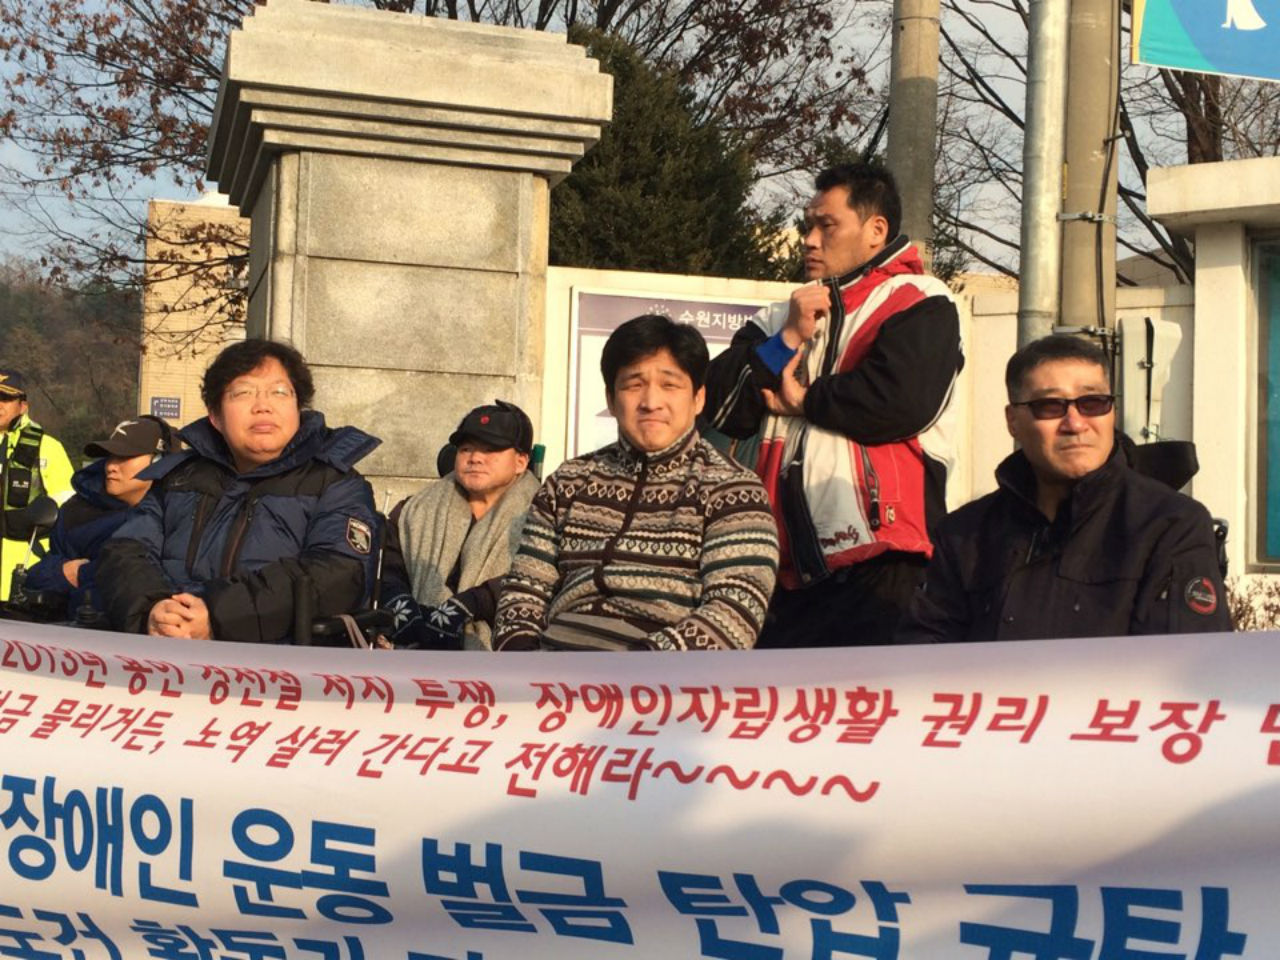 엄마(맨 왼쪽)가 노역에 들어가기 전 열렸던 기자회견. '진보적 장애인 운동 벌금 탄압 규탄 및 이형숙 이도건 김지태 활동가 자진노역 결의 기자회견'이었다.